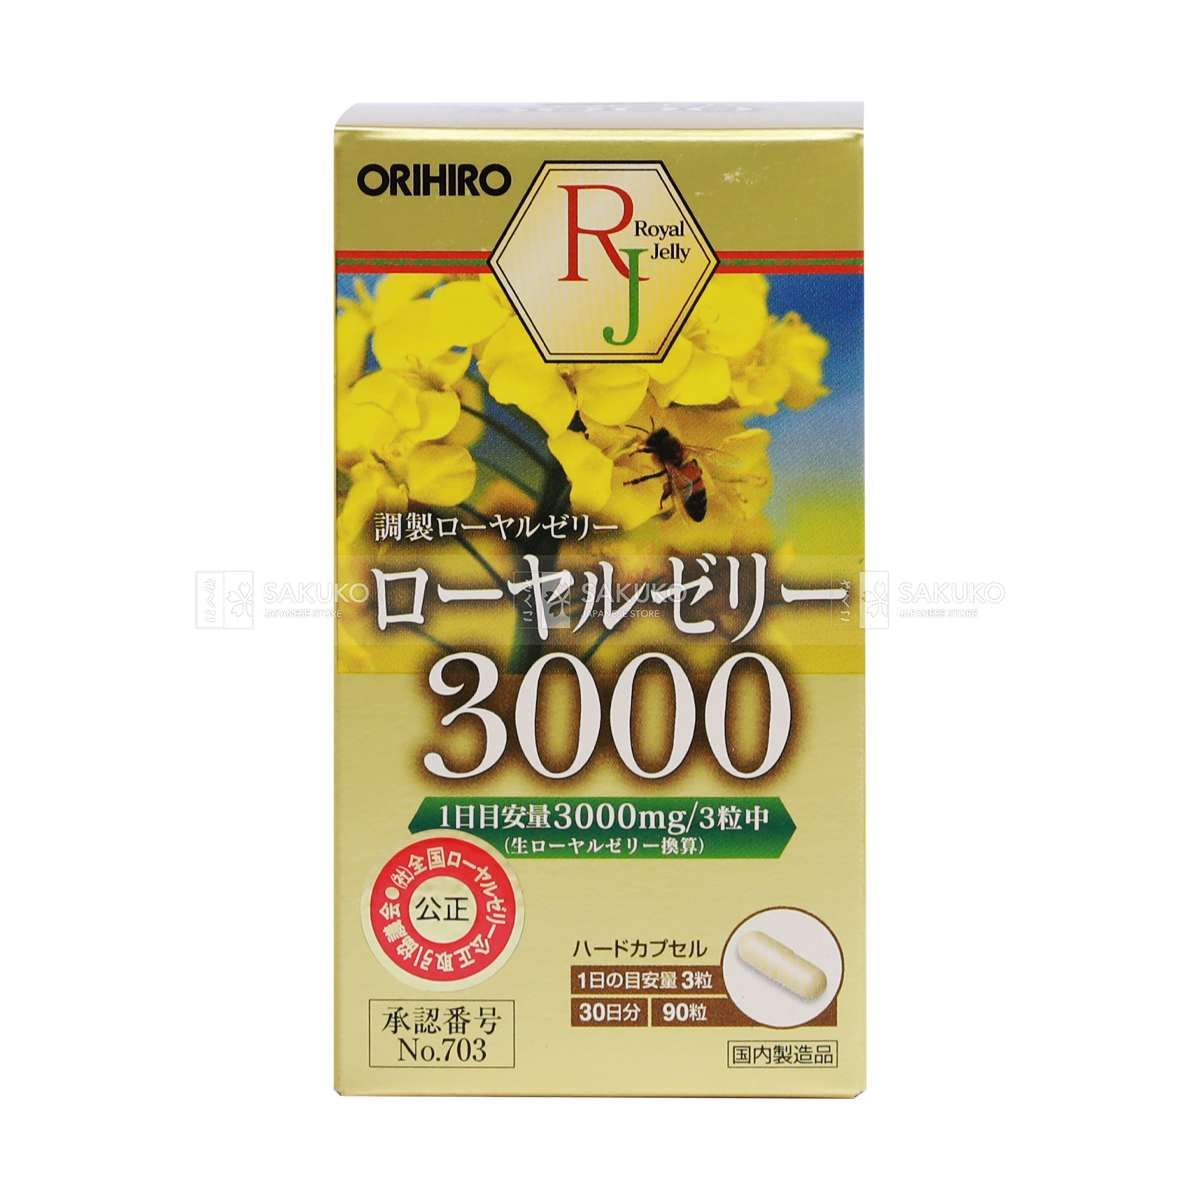  ORIHIRO- Sữa ong chúa Royal Jelly 3000 (90 viên) 